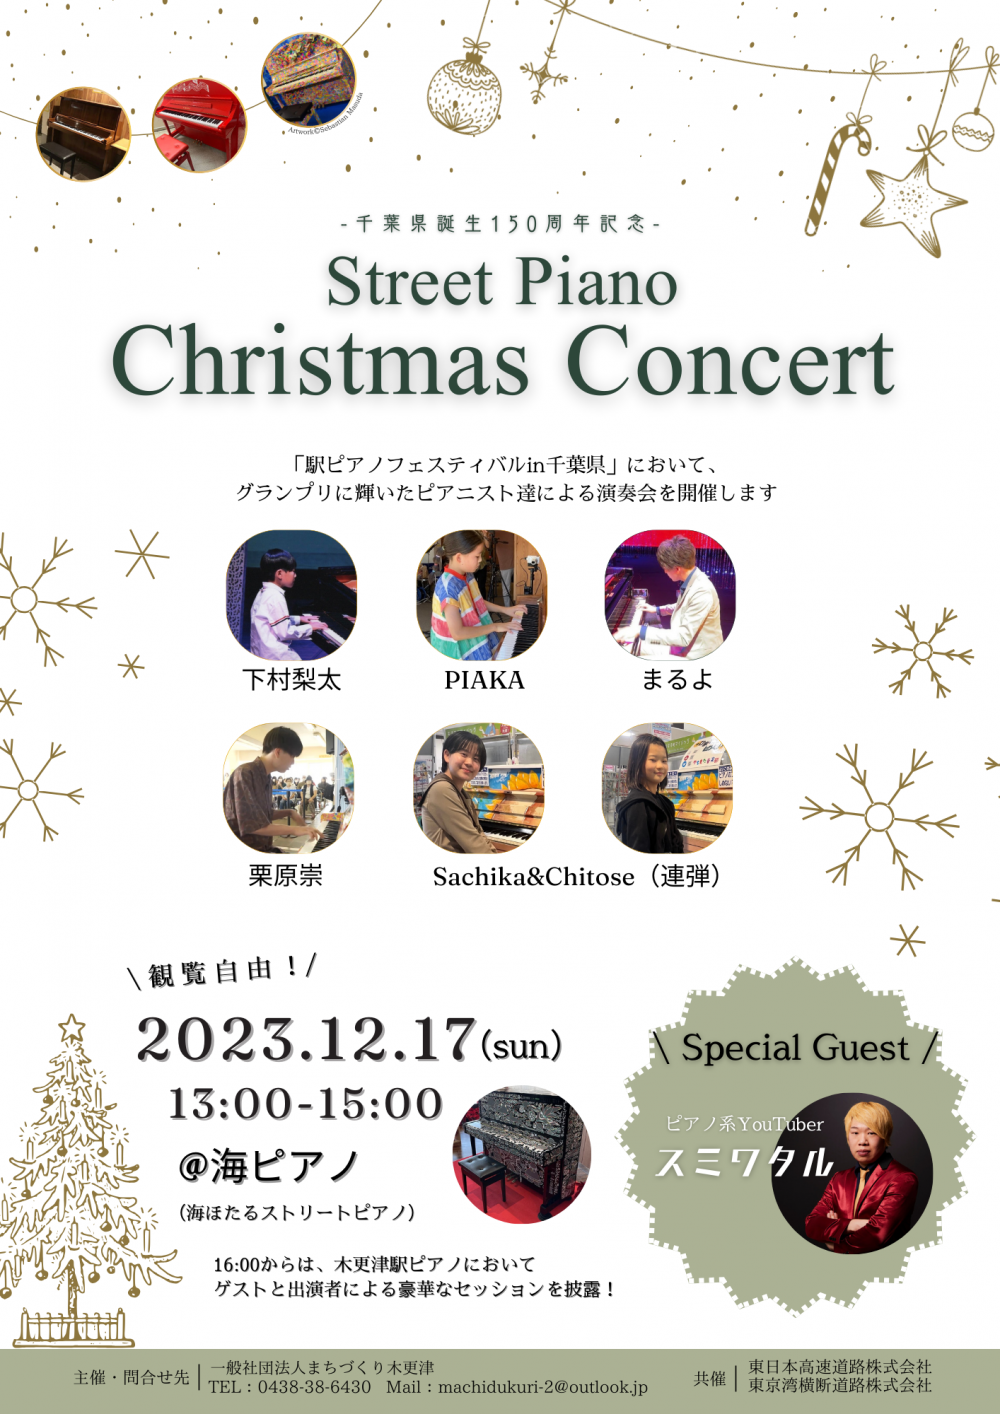 ポスター最終：Street Piano Christmas Concert（演奏会）余白調整.png